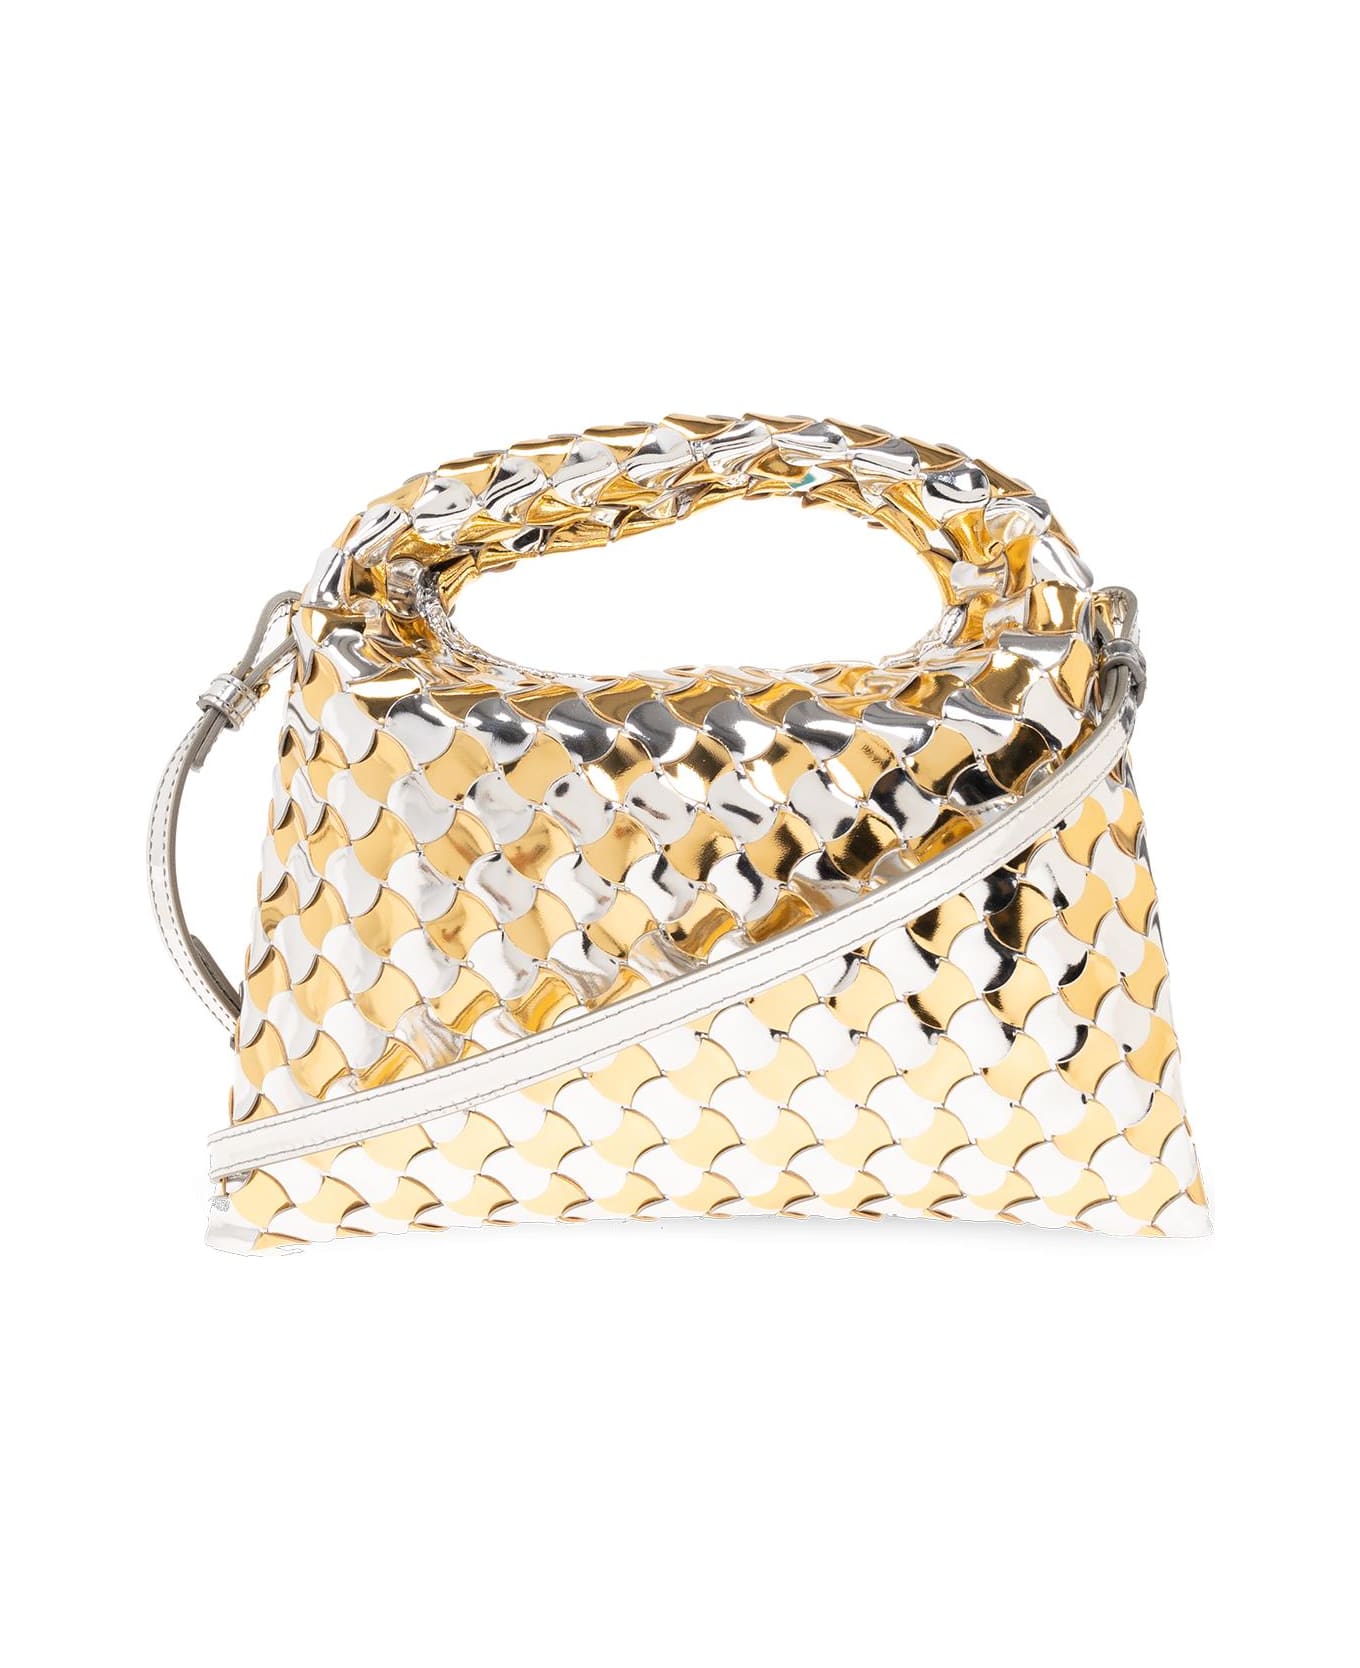 Bottega Veneta 'hop Mini' Shoulder Bag - Silver/gold トートバッグ